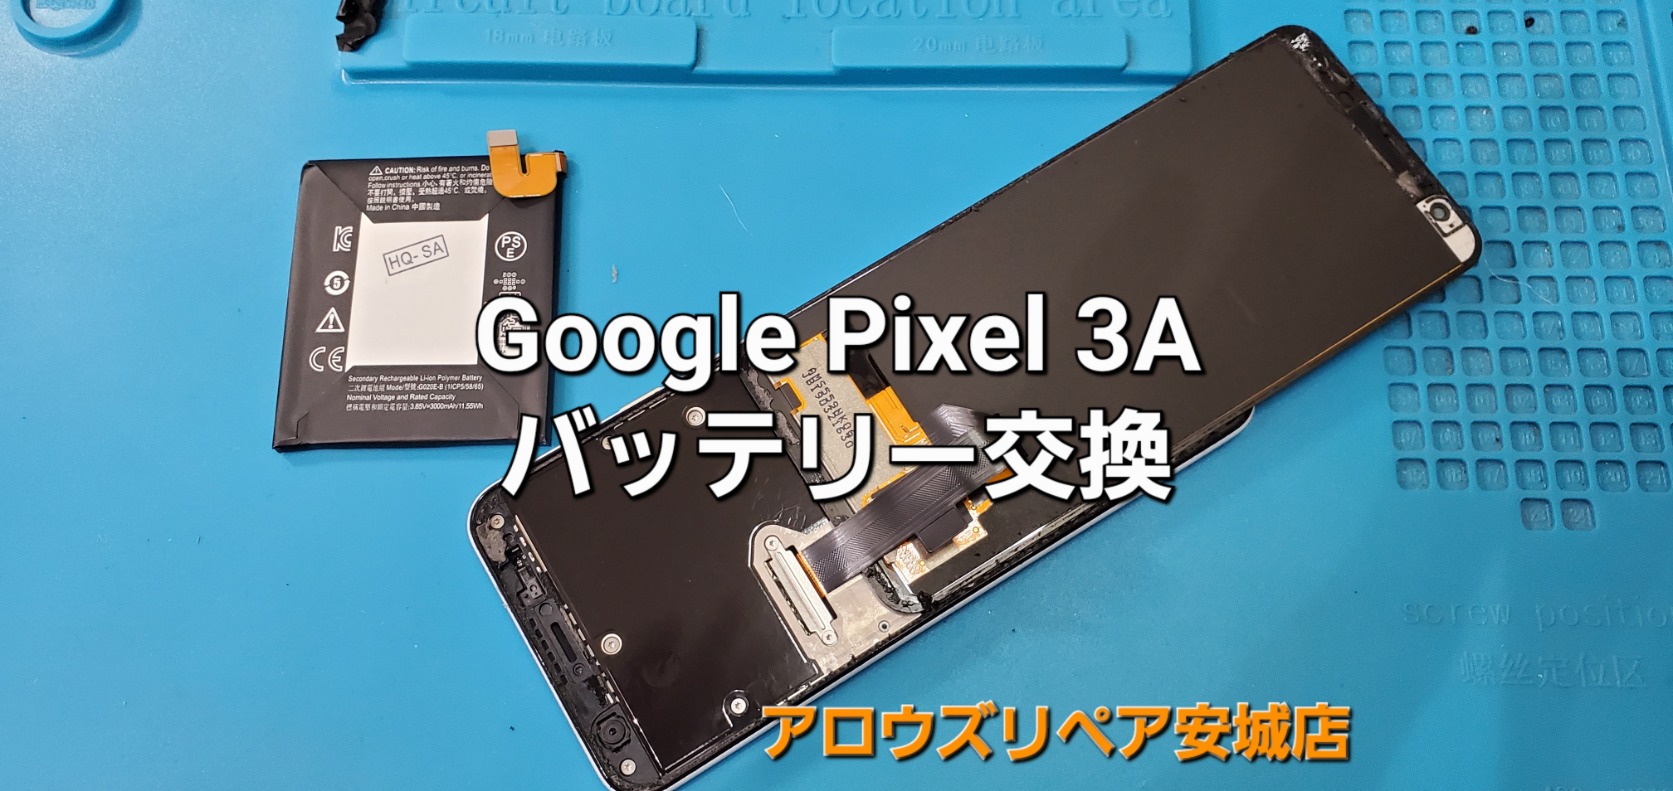 岡崎市よりご来店、Google Pixel 3A バッテリー交換修理のご紹介。|安城駅徒歩3分|iPhone・Switch・iPad修理ならアロウズリペア安城がおすすめ！JR安城駅から徒歩3分、データそのまま即日修理、Switch修理もお任せ下さい。お客様のお悩み解決致します。